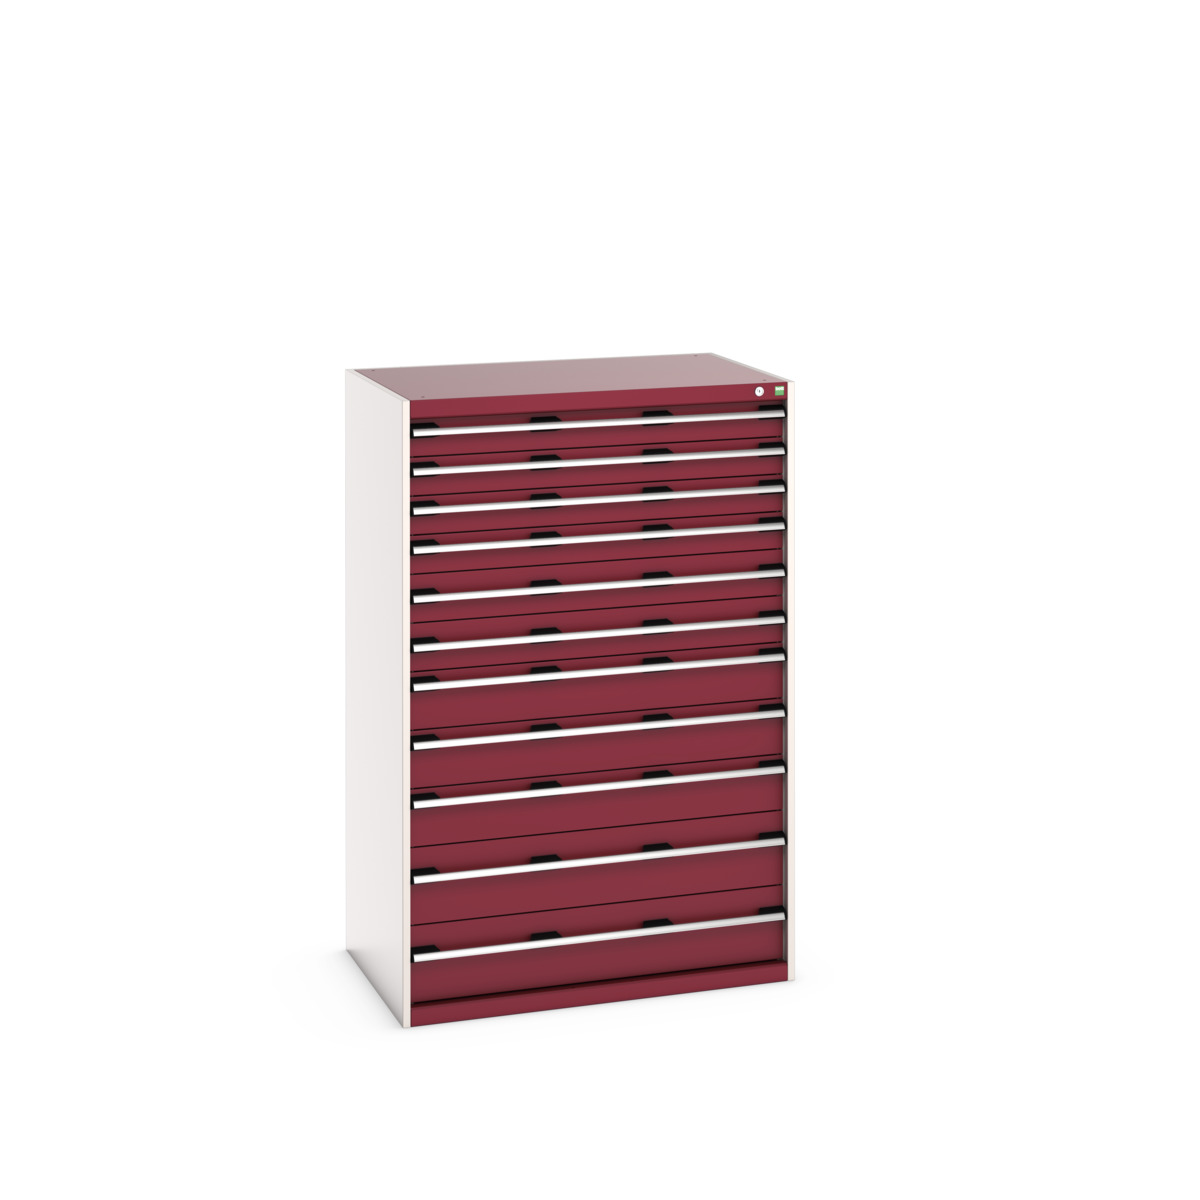 40029038.24V - cubio drawer cabinet